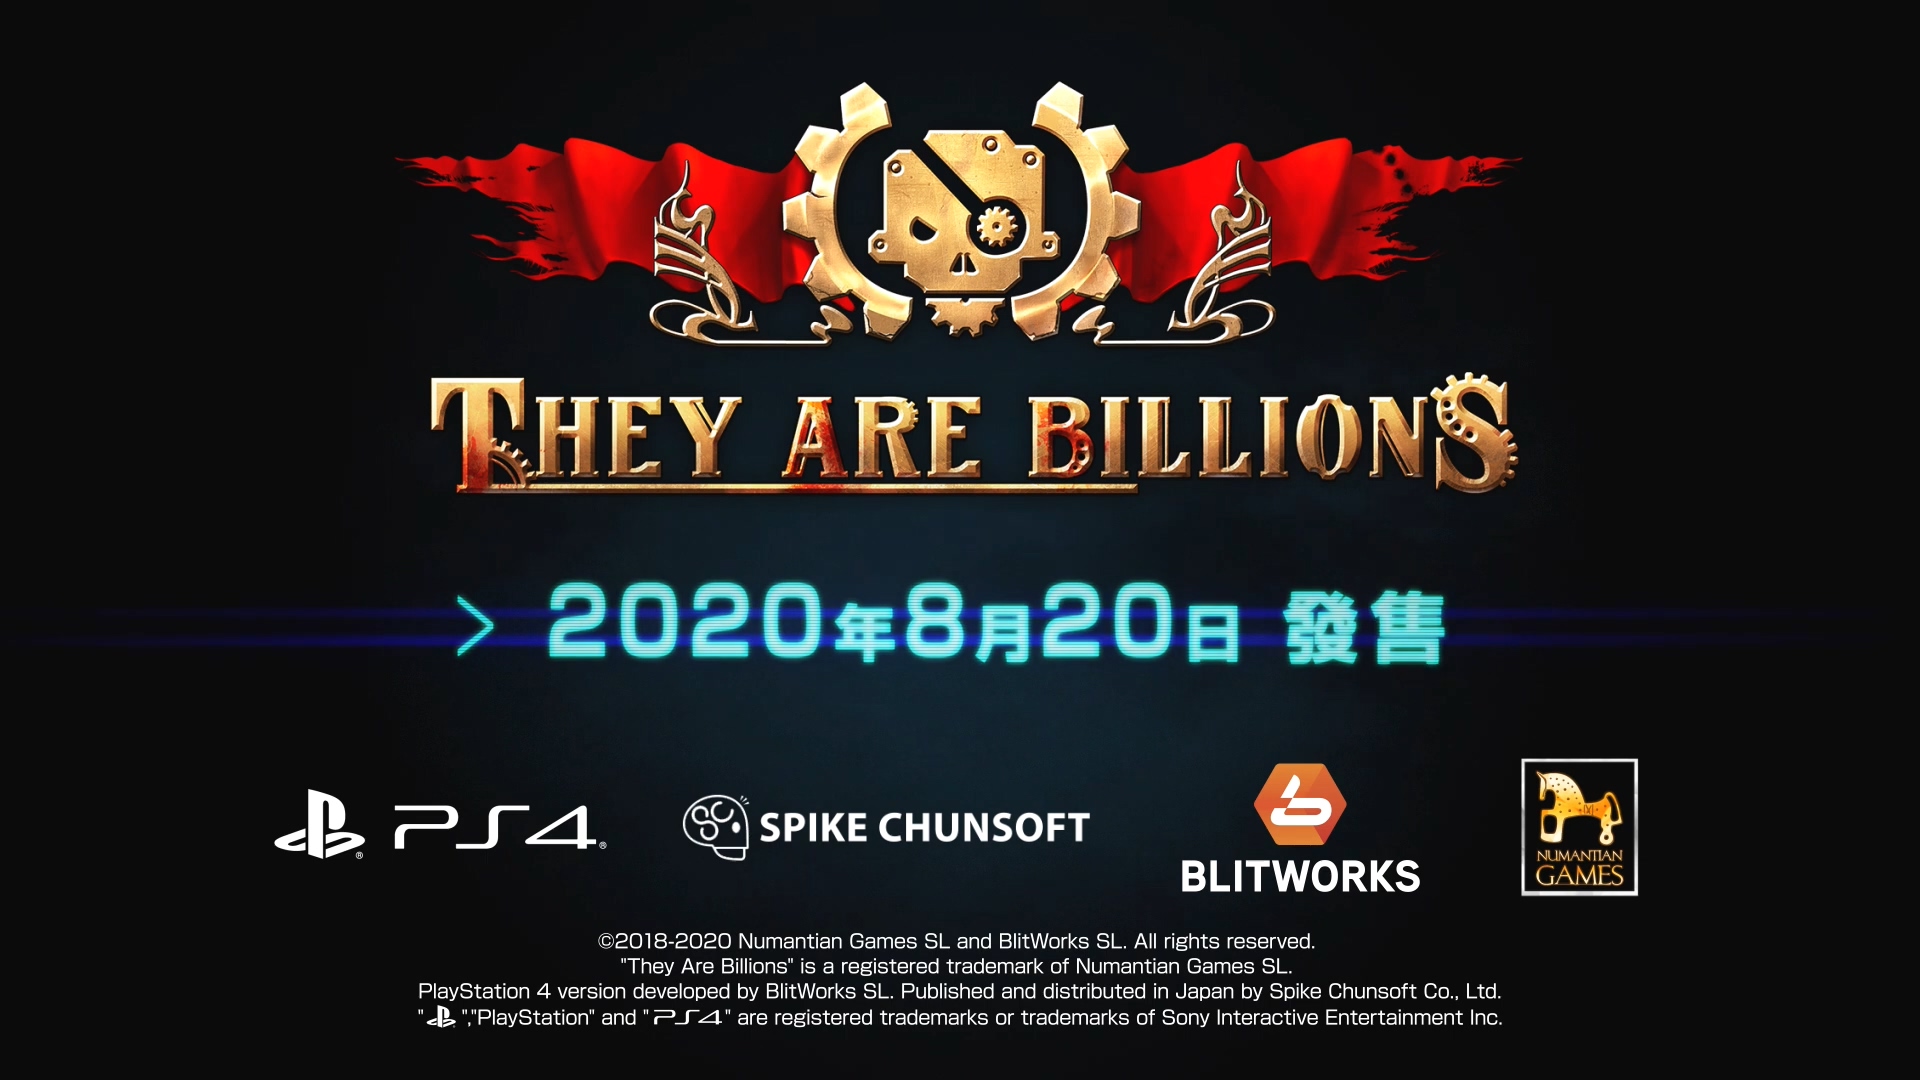 《亿万僵尸》PS4中文版将于8月20日发售 新预告发布